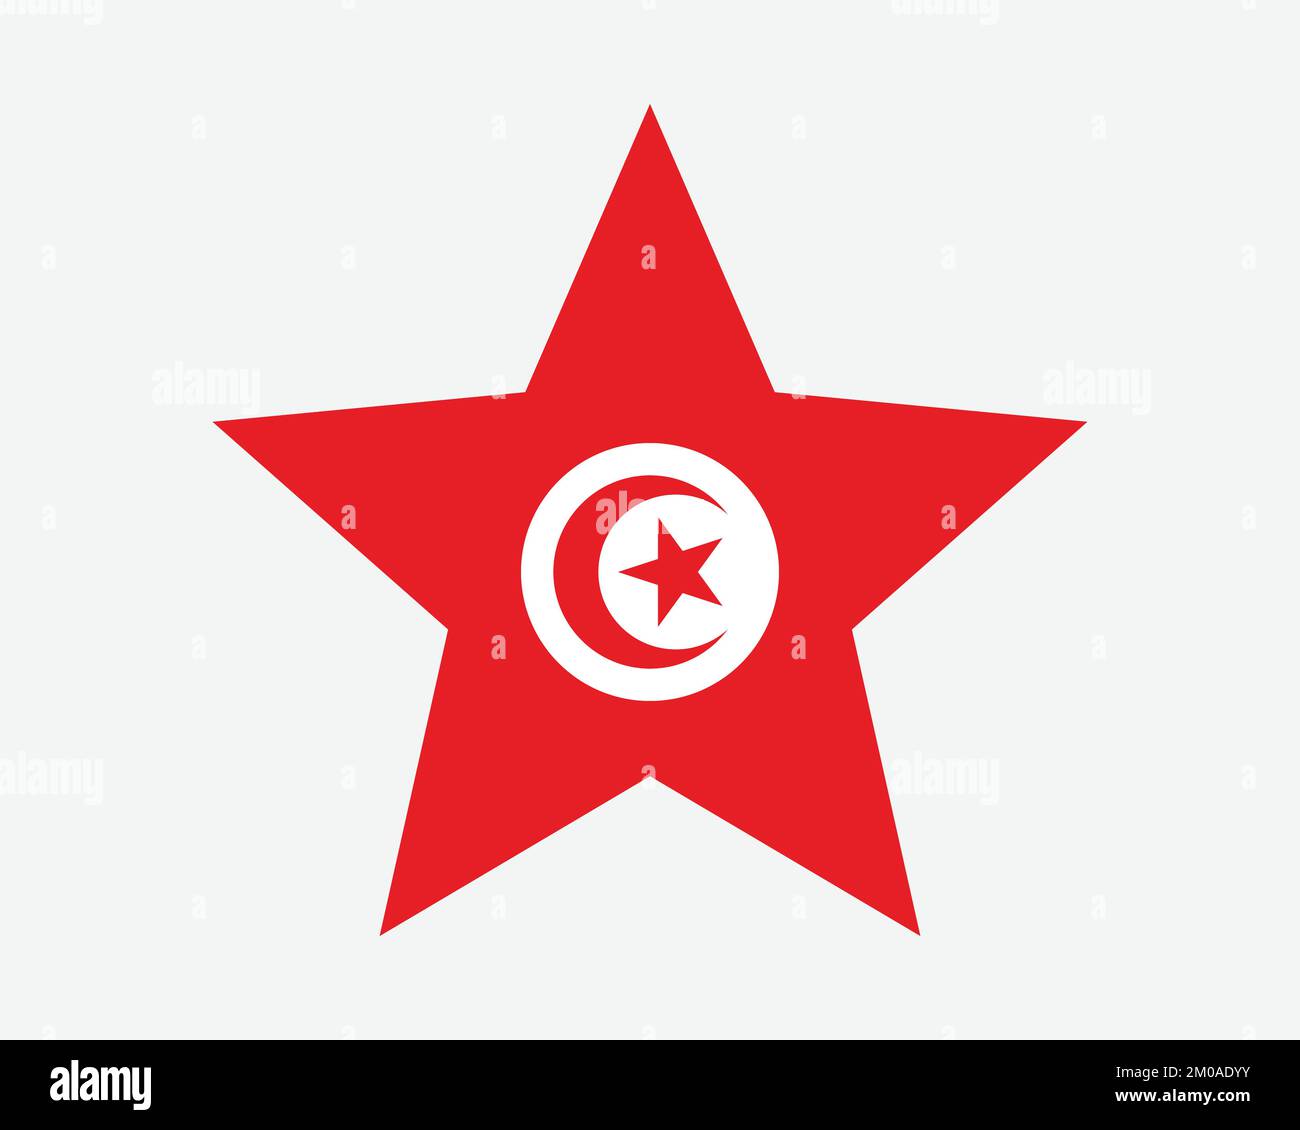 Tunesische Sternflagge. Tunesische Sternform. Tunesien Country National Banner Symbol Vector Flat Artwork Graphic Illustration Stock Vektor